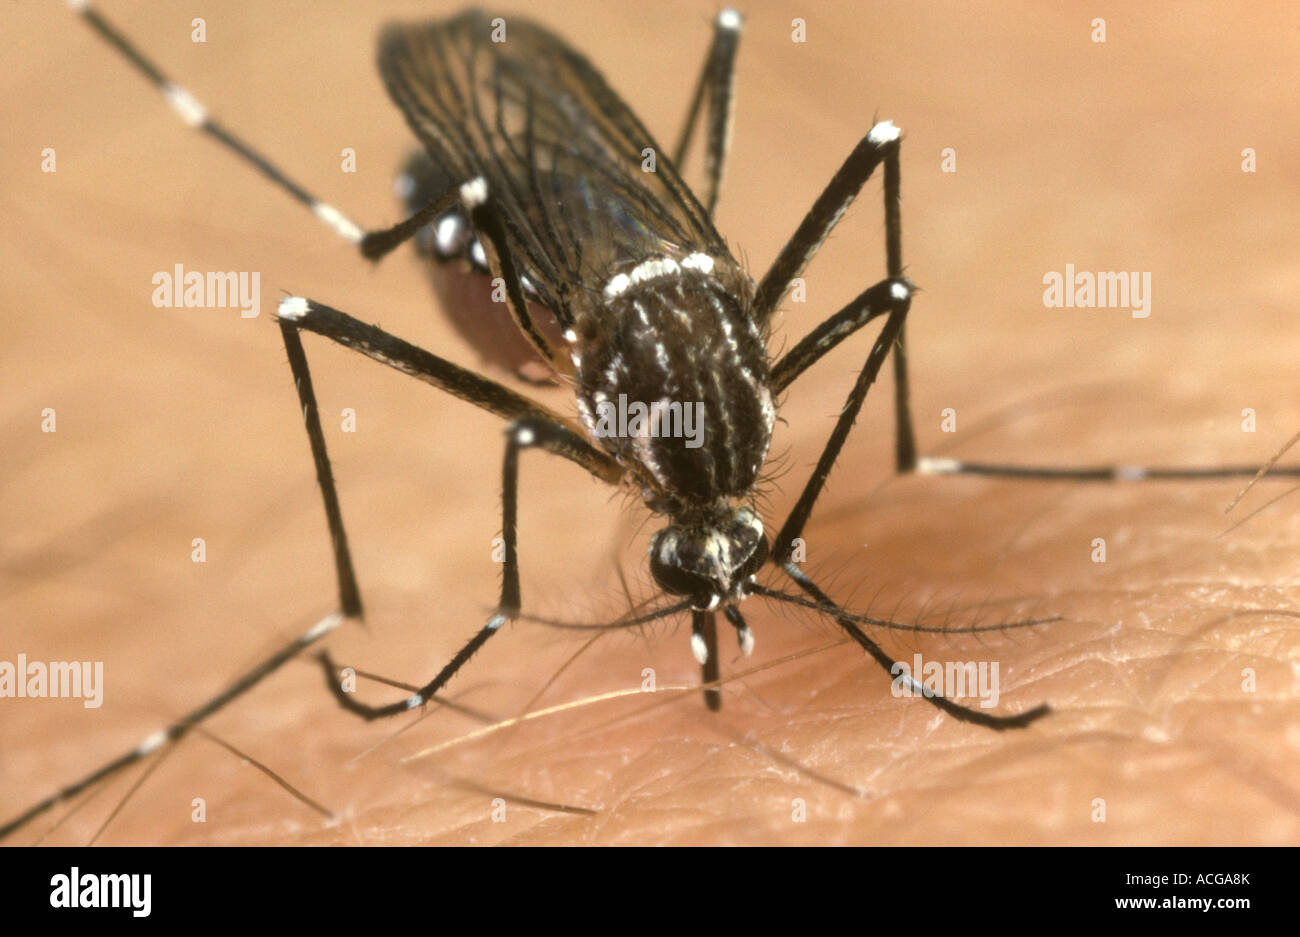 Gelbfieber Vektor Mücke Aedes Aegypti Fütterung auf einem menschlichen arm Stockfoto